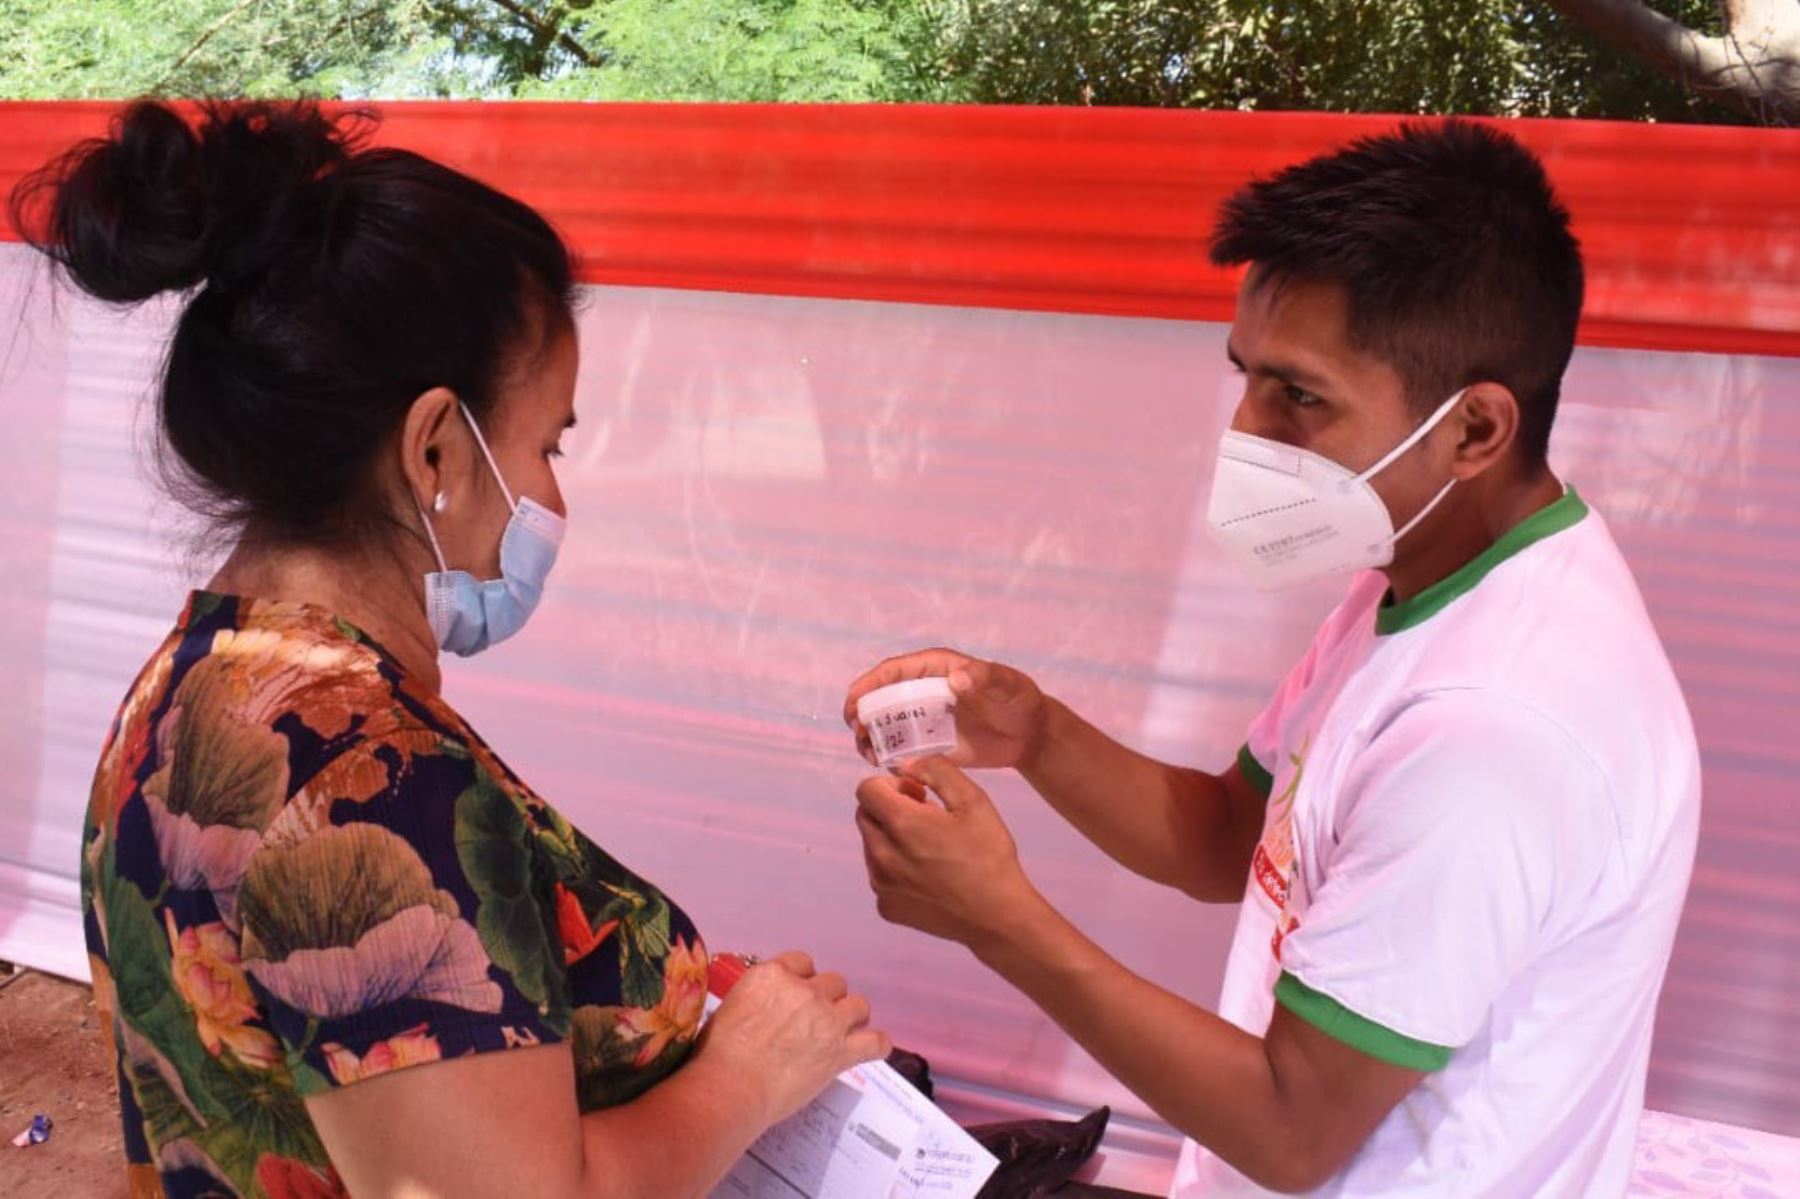 El Minsa recuerda que la tuberculosis (TB) es una enfermedad contagiosa. Foto: Minsa